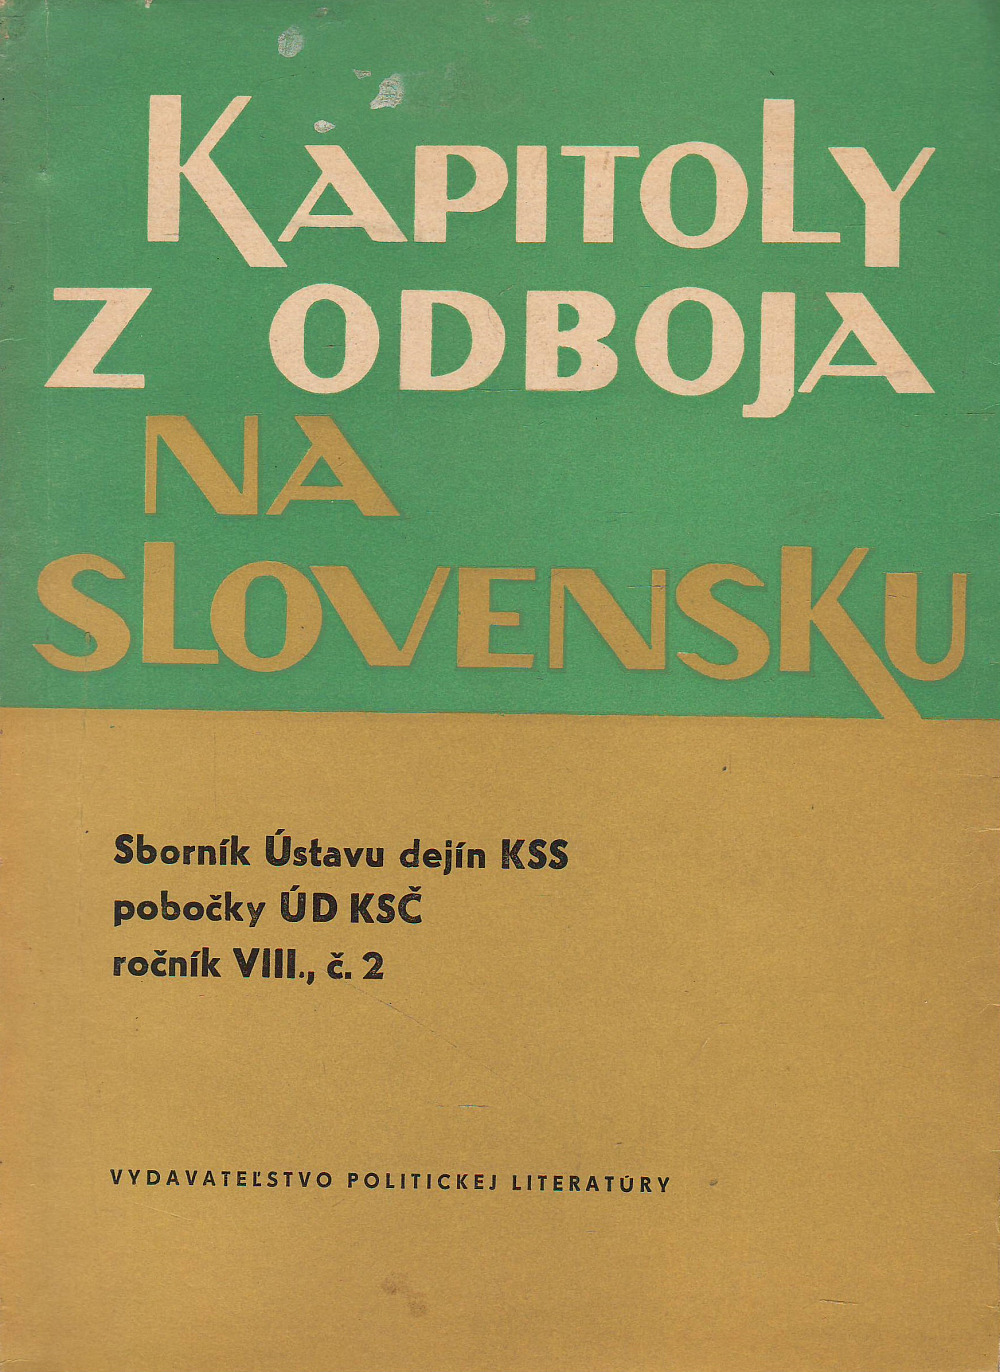 Kapitoly z odboja na Slovensku